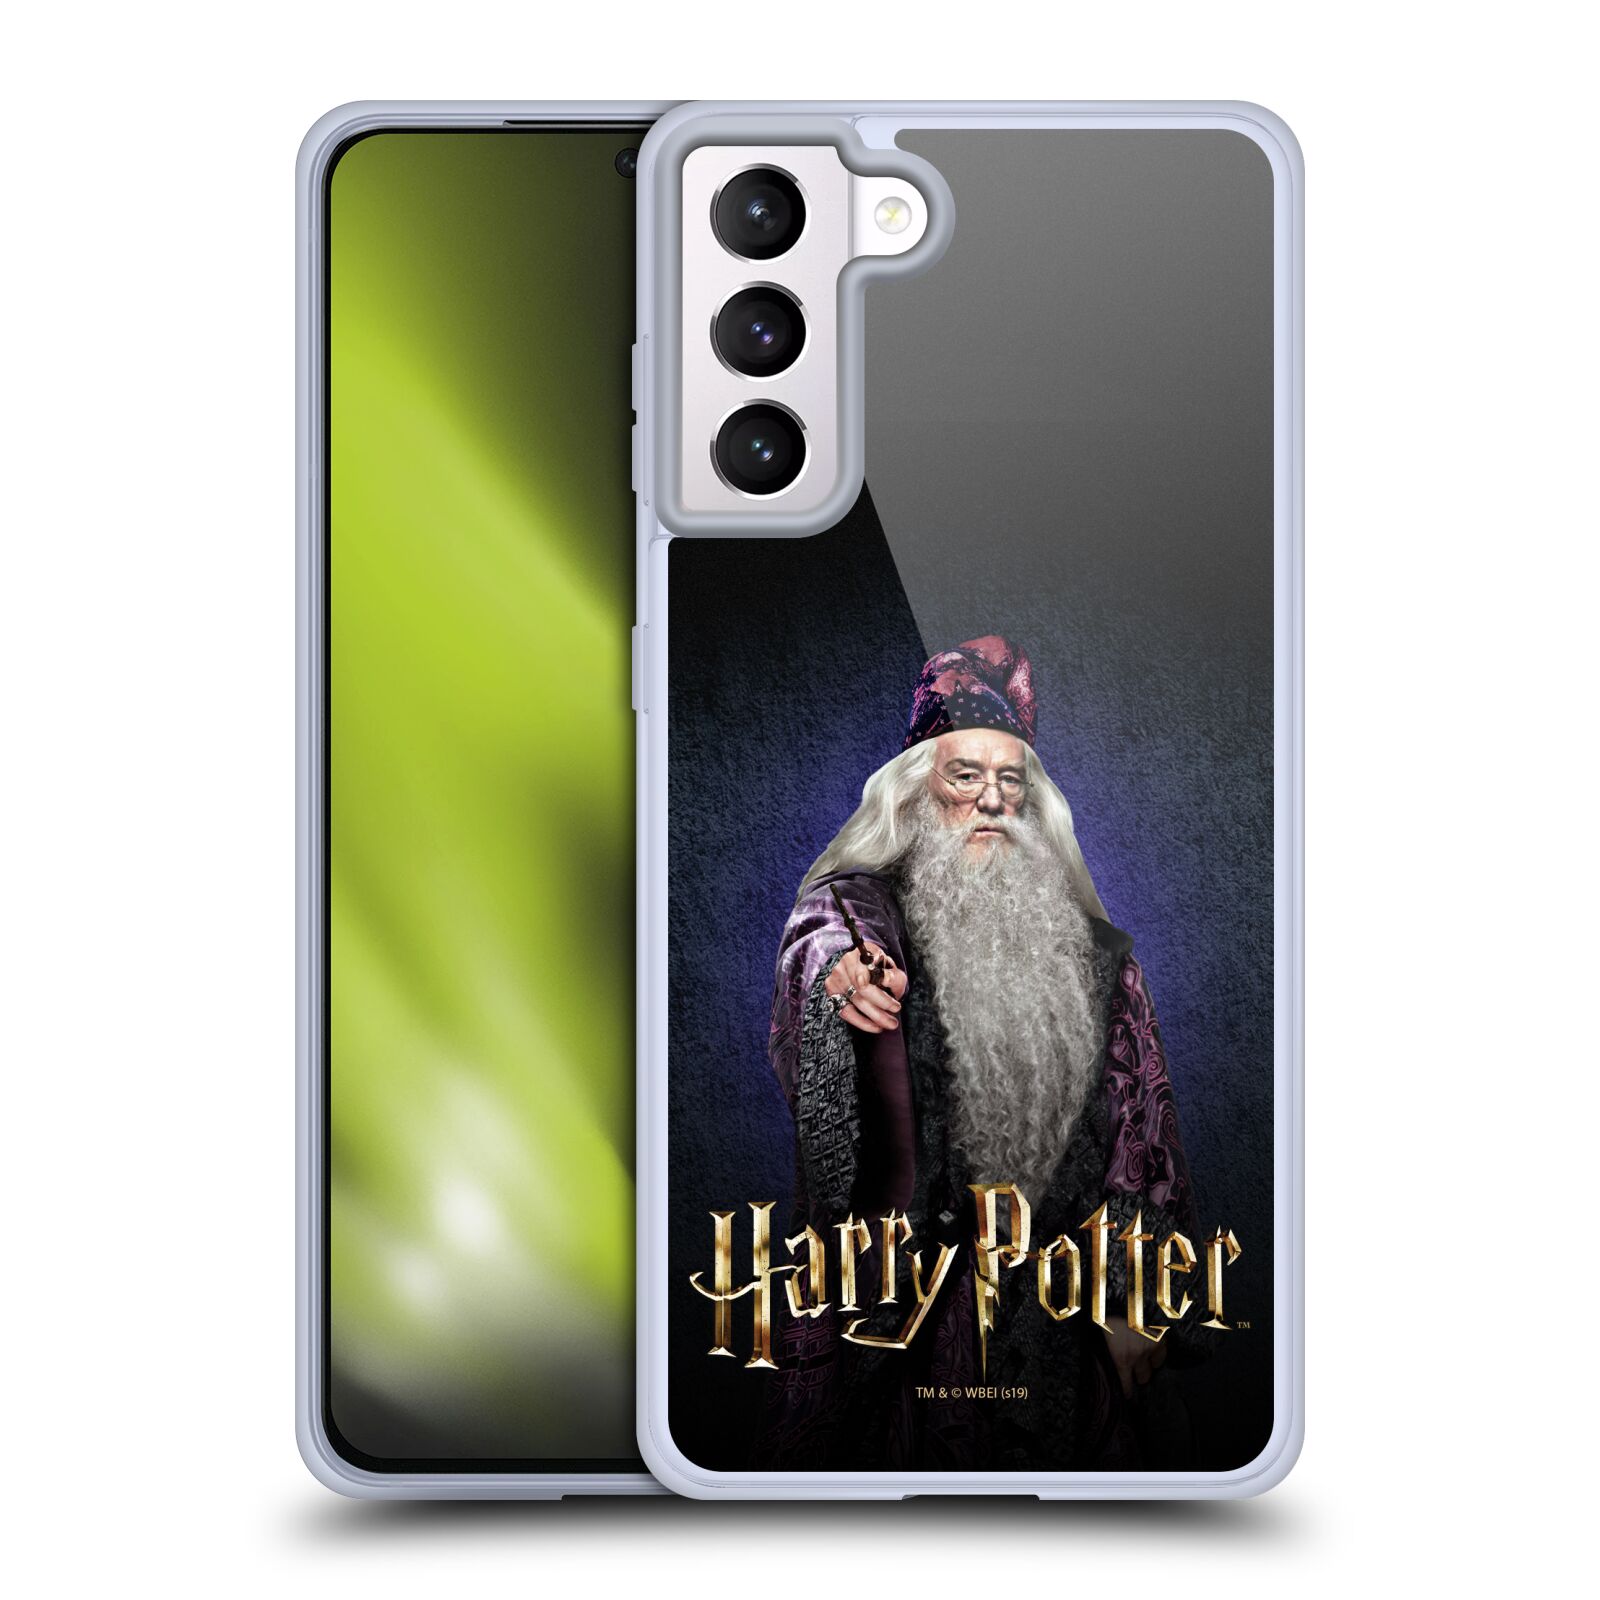 Silikonové pouzdro na mobil Samsung Galaxy S21 5G - Harry Potter - Albus Brumbál (Silikonový kryt, obal, pouzdro na mobilní telefon Samsung Galaxy S21 5G G991B s licencovaným motivem Harry Potter - Albus Brumbál)